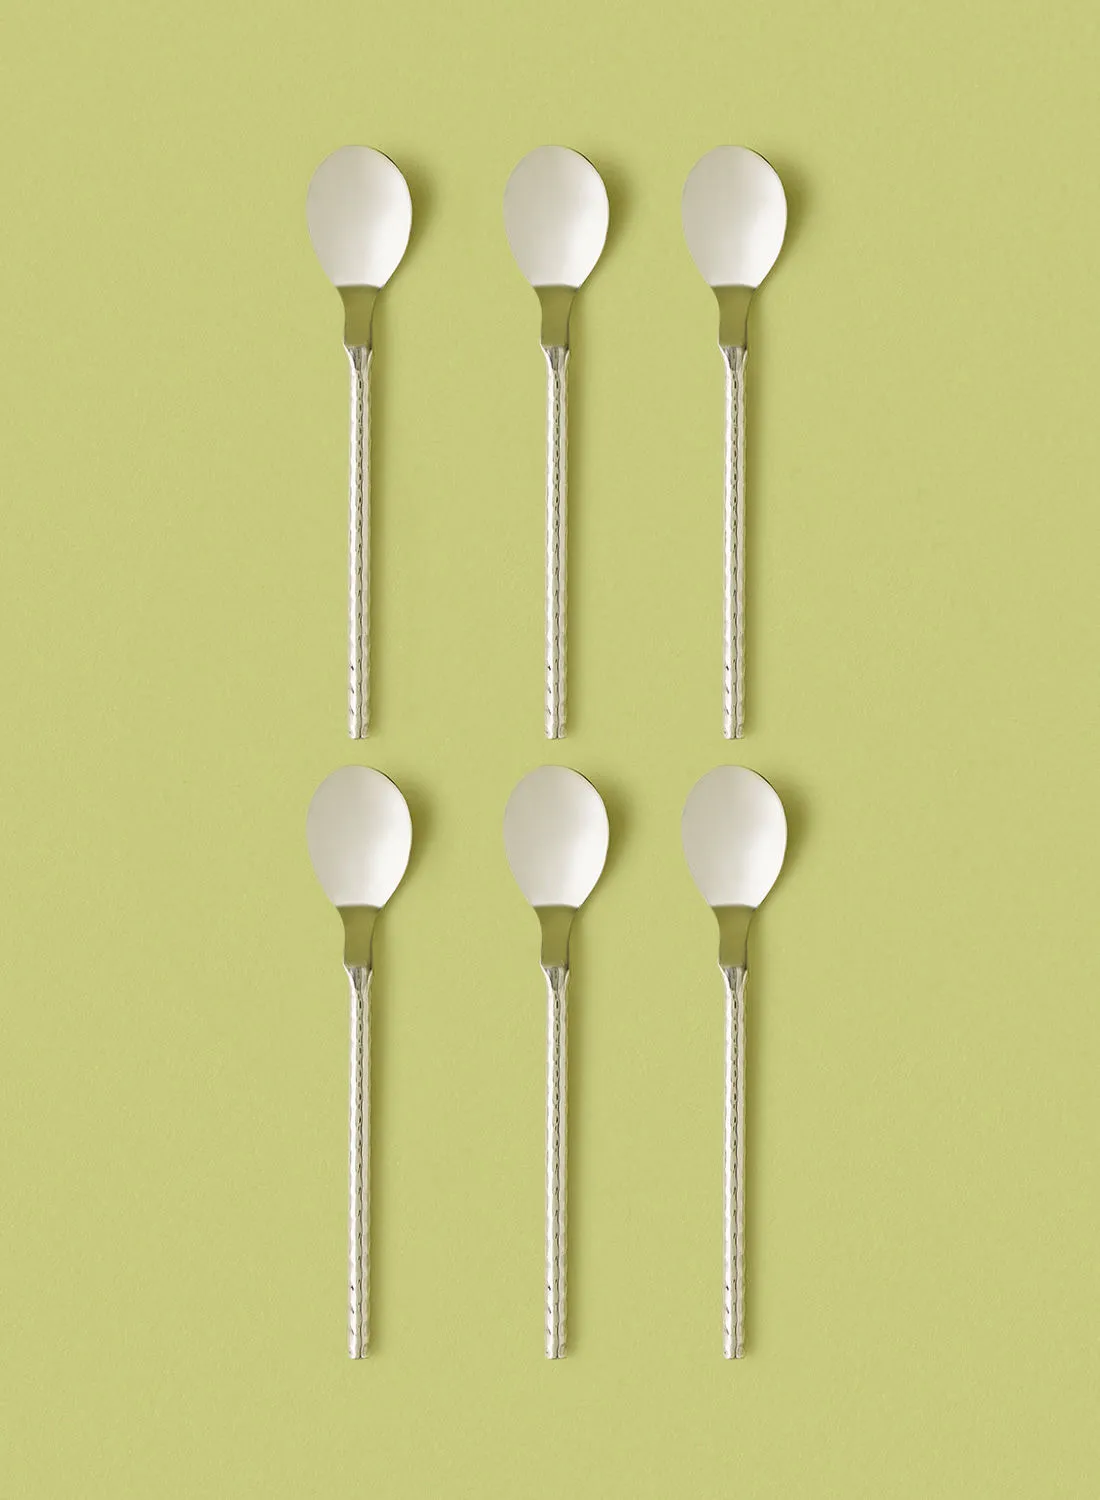 noon east 6 Piece Teaspoons Set - Made Of Stainless Steel - Silverware Flatware - Spoons - Spoon Set - Tea Spoons - Serves 6 - Design Silver Stainless Steel